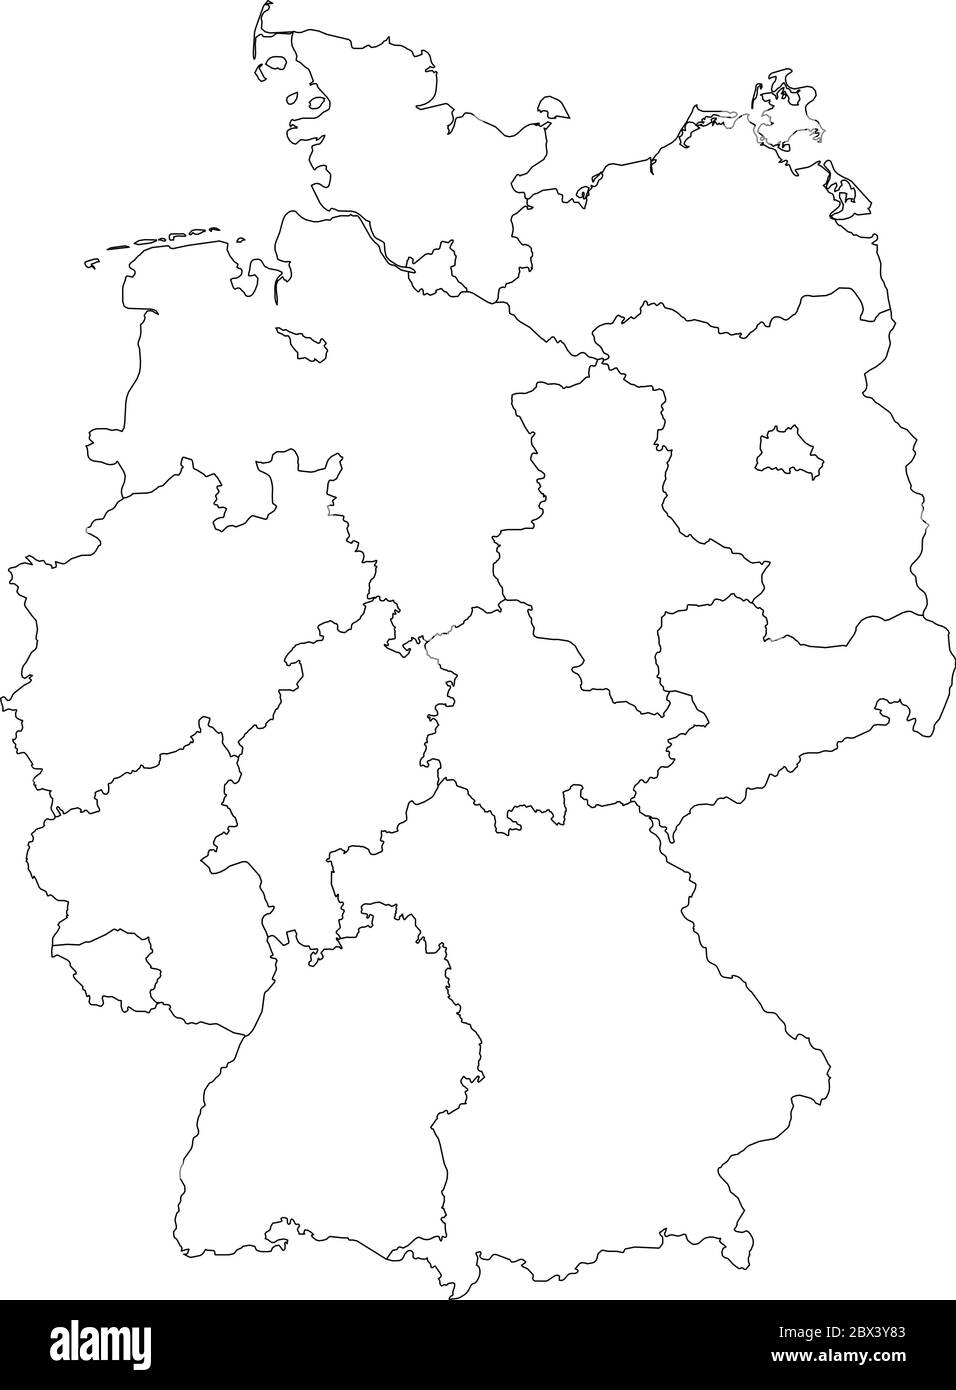 Karte von Deutschland aufgeteilt in 13 Bundesländer und 3 Stadtstaaten - Berlin, Bremen und Hamburg, Europa. Einfache flache weiße Vektorkarte mit schwarzen Umrissen. Stock Vektor